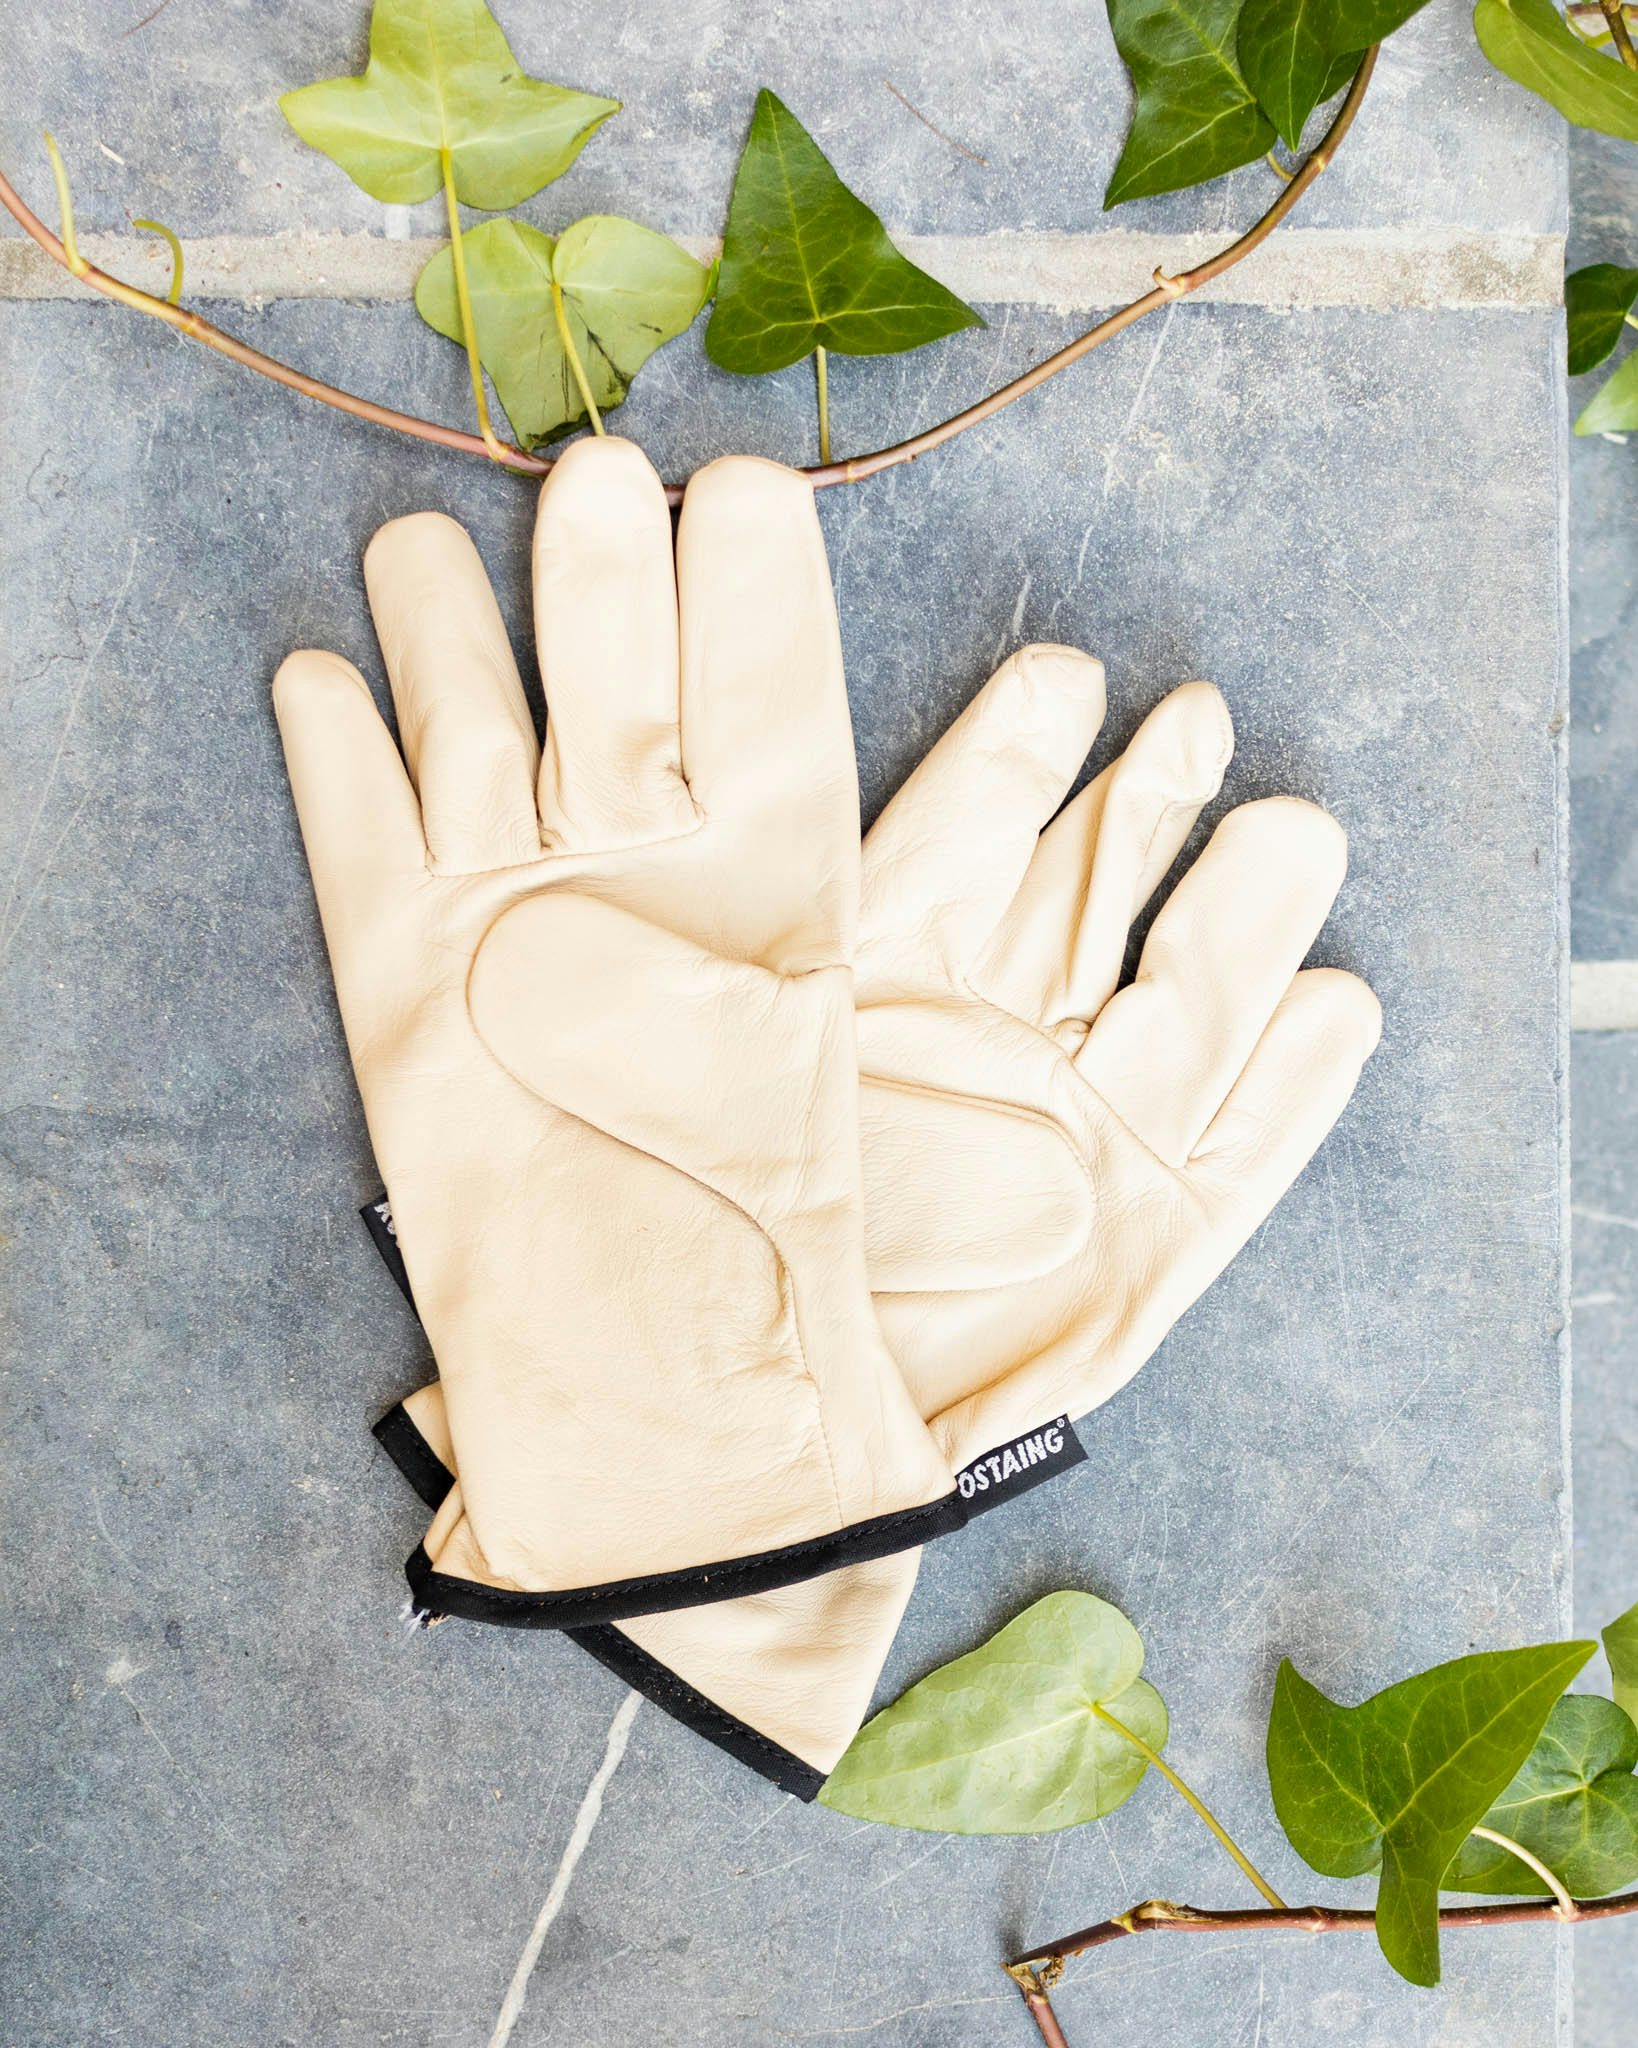 Comment choisir ses gants de jardinage ? - Promesse de Fleurs